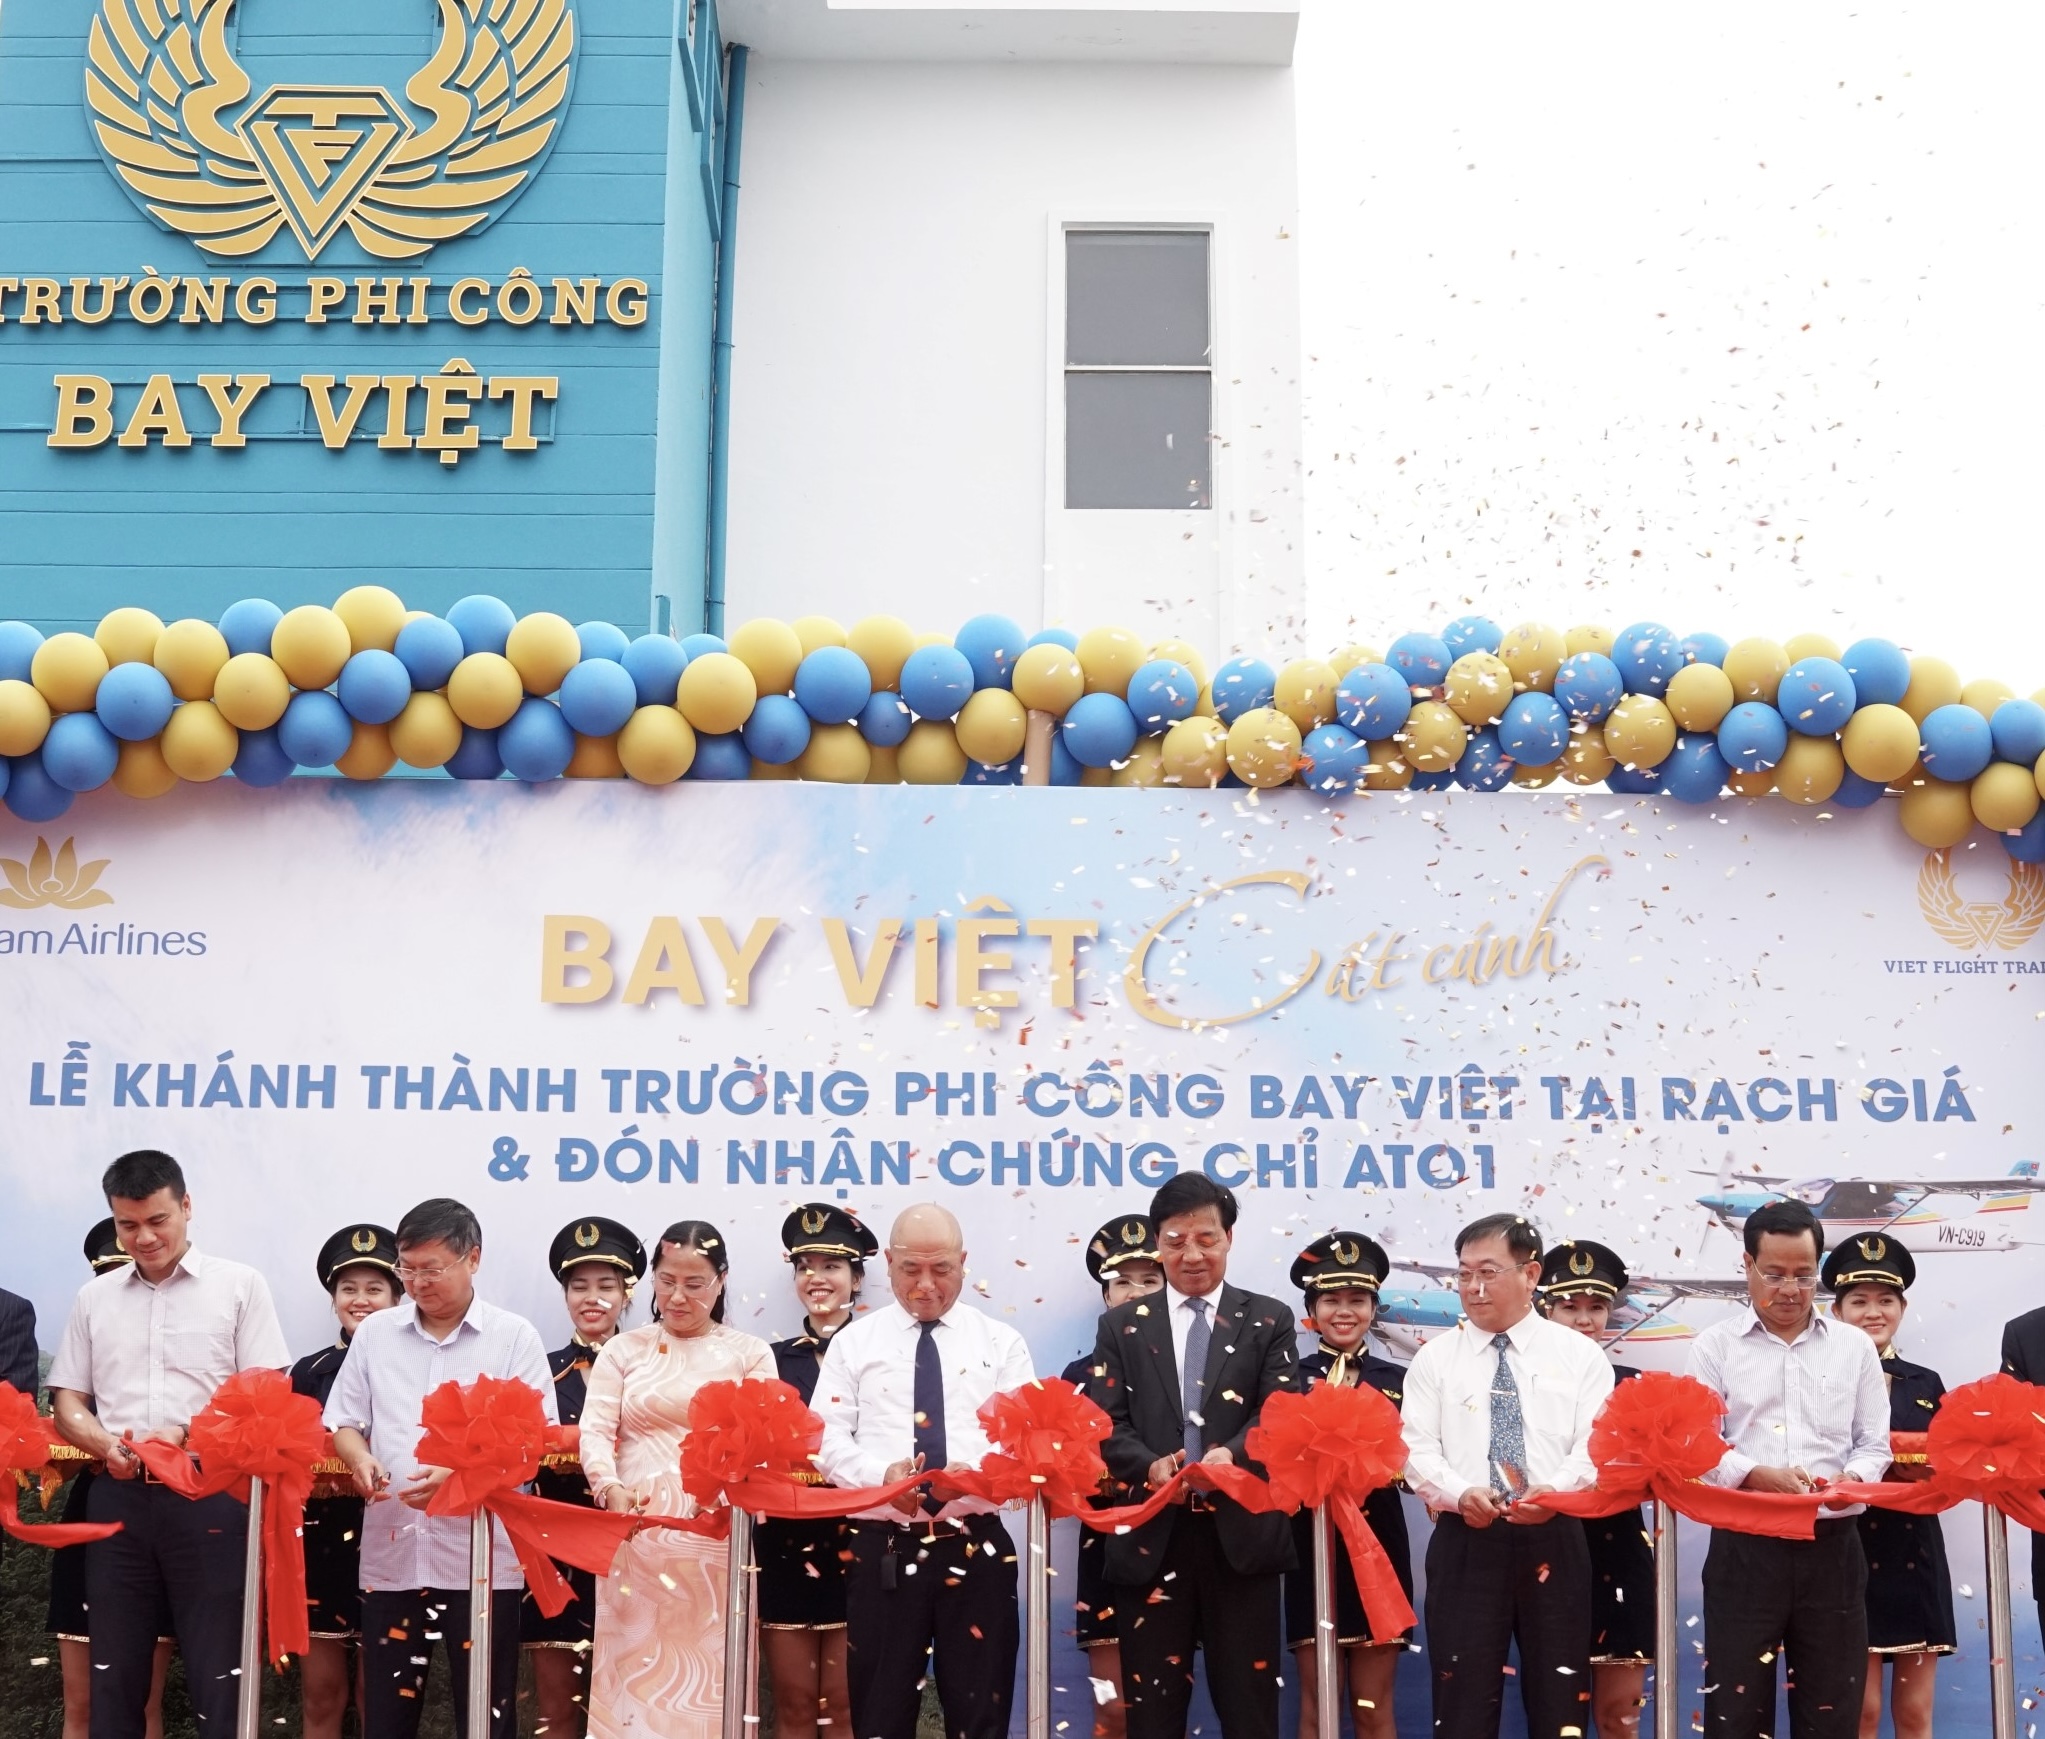 Vietnam Airlines khánh thành trường phi công Bay Việt tại Rạch Giá